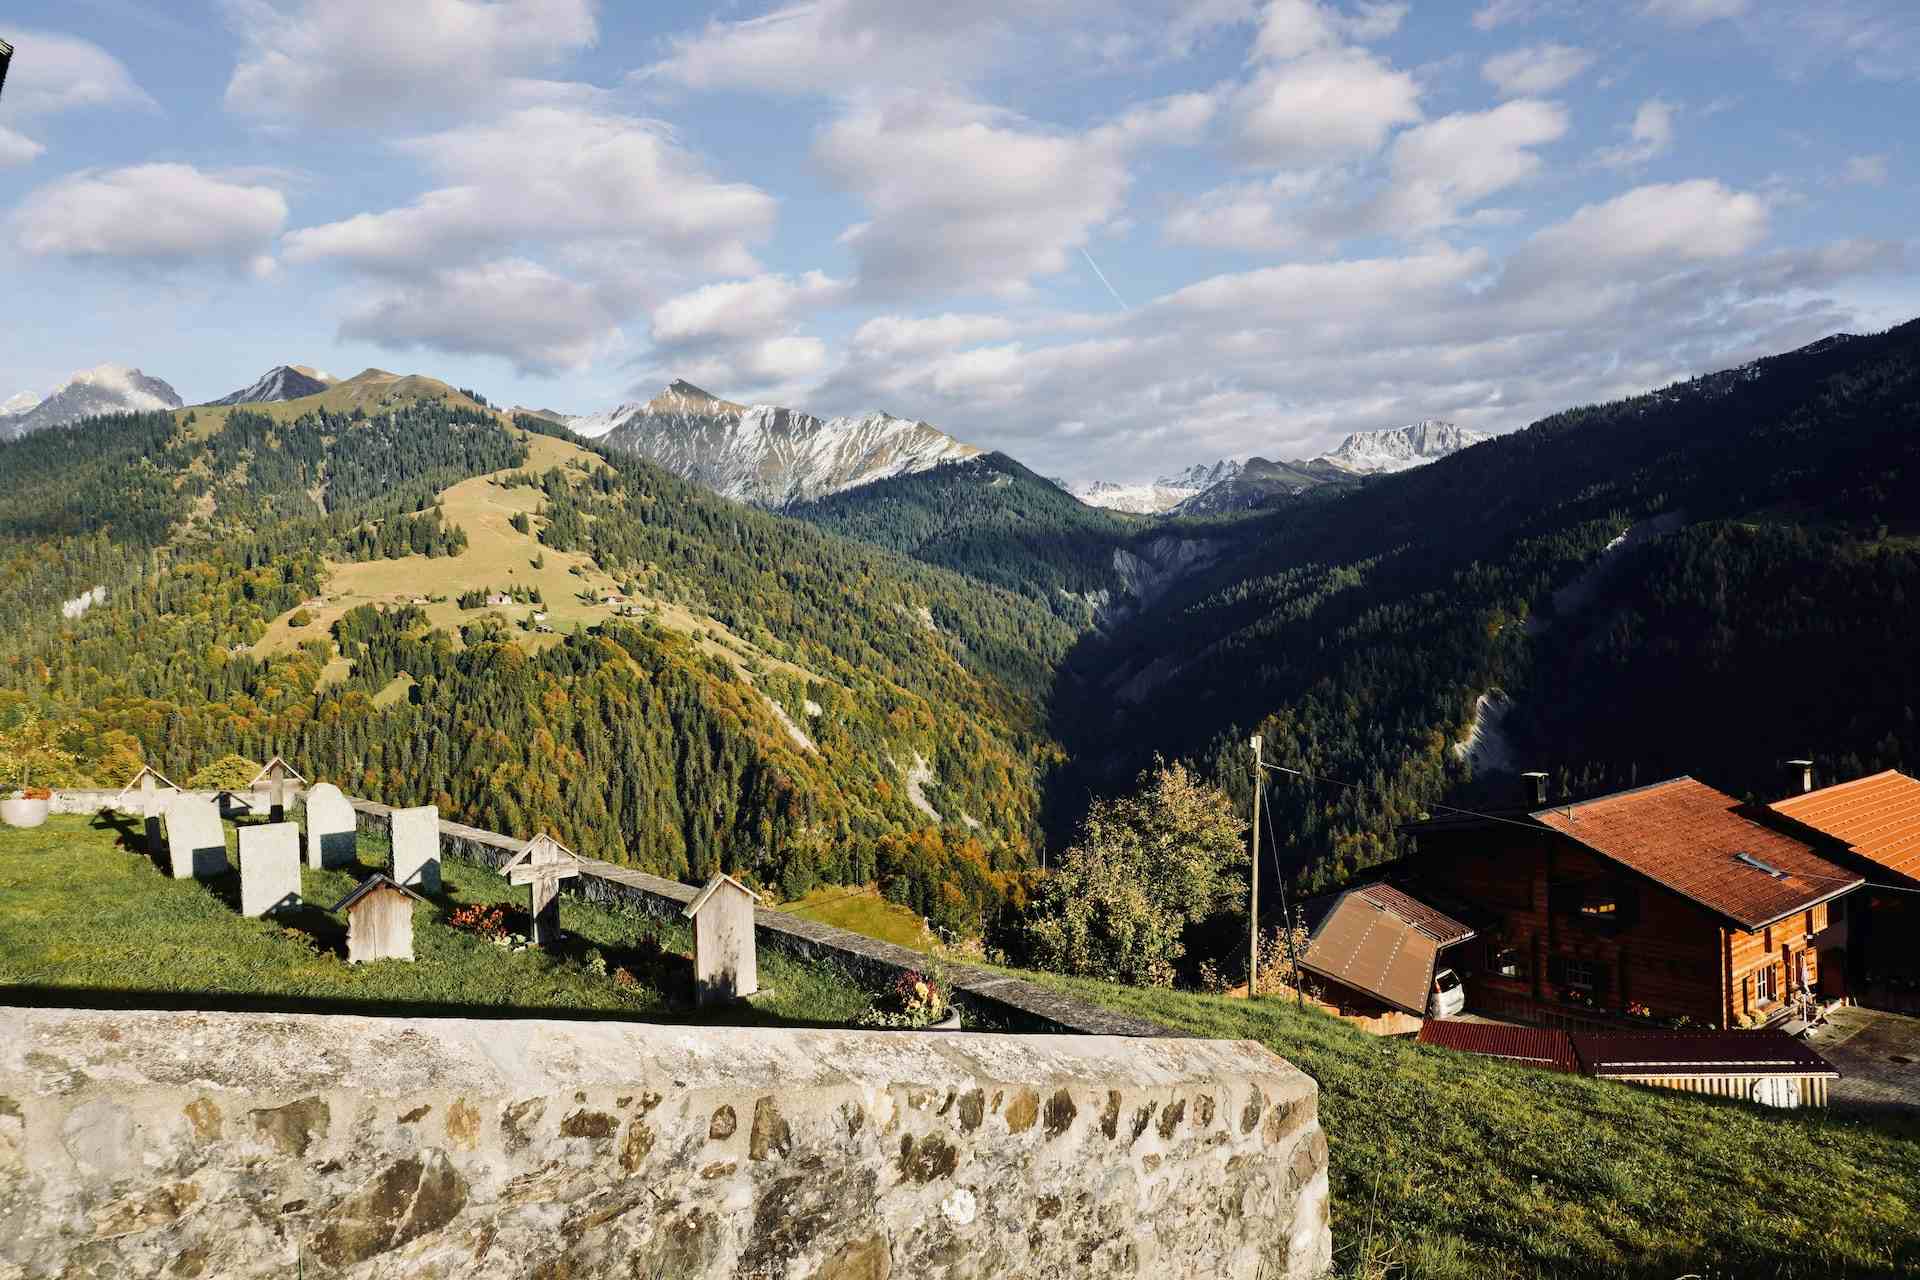 Juon, Produzent in Zillis Kanton Graubünden in der Schweiz